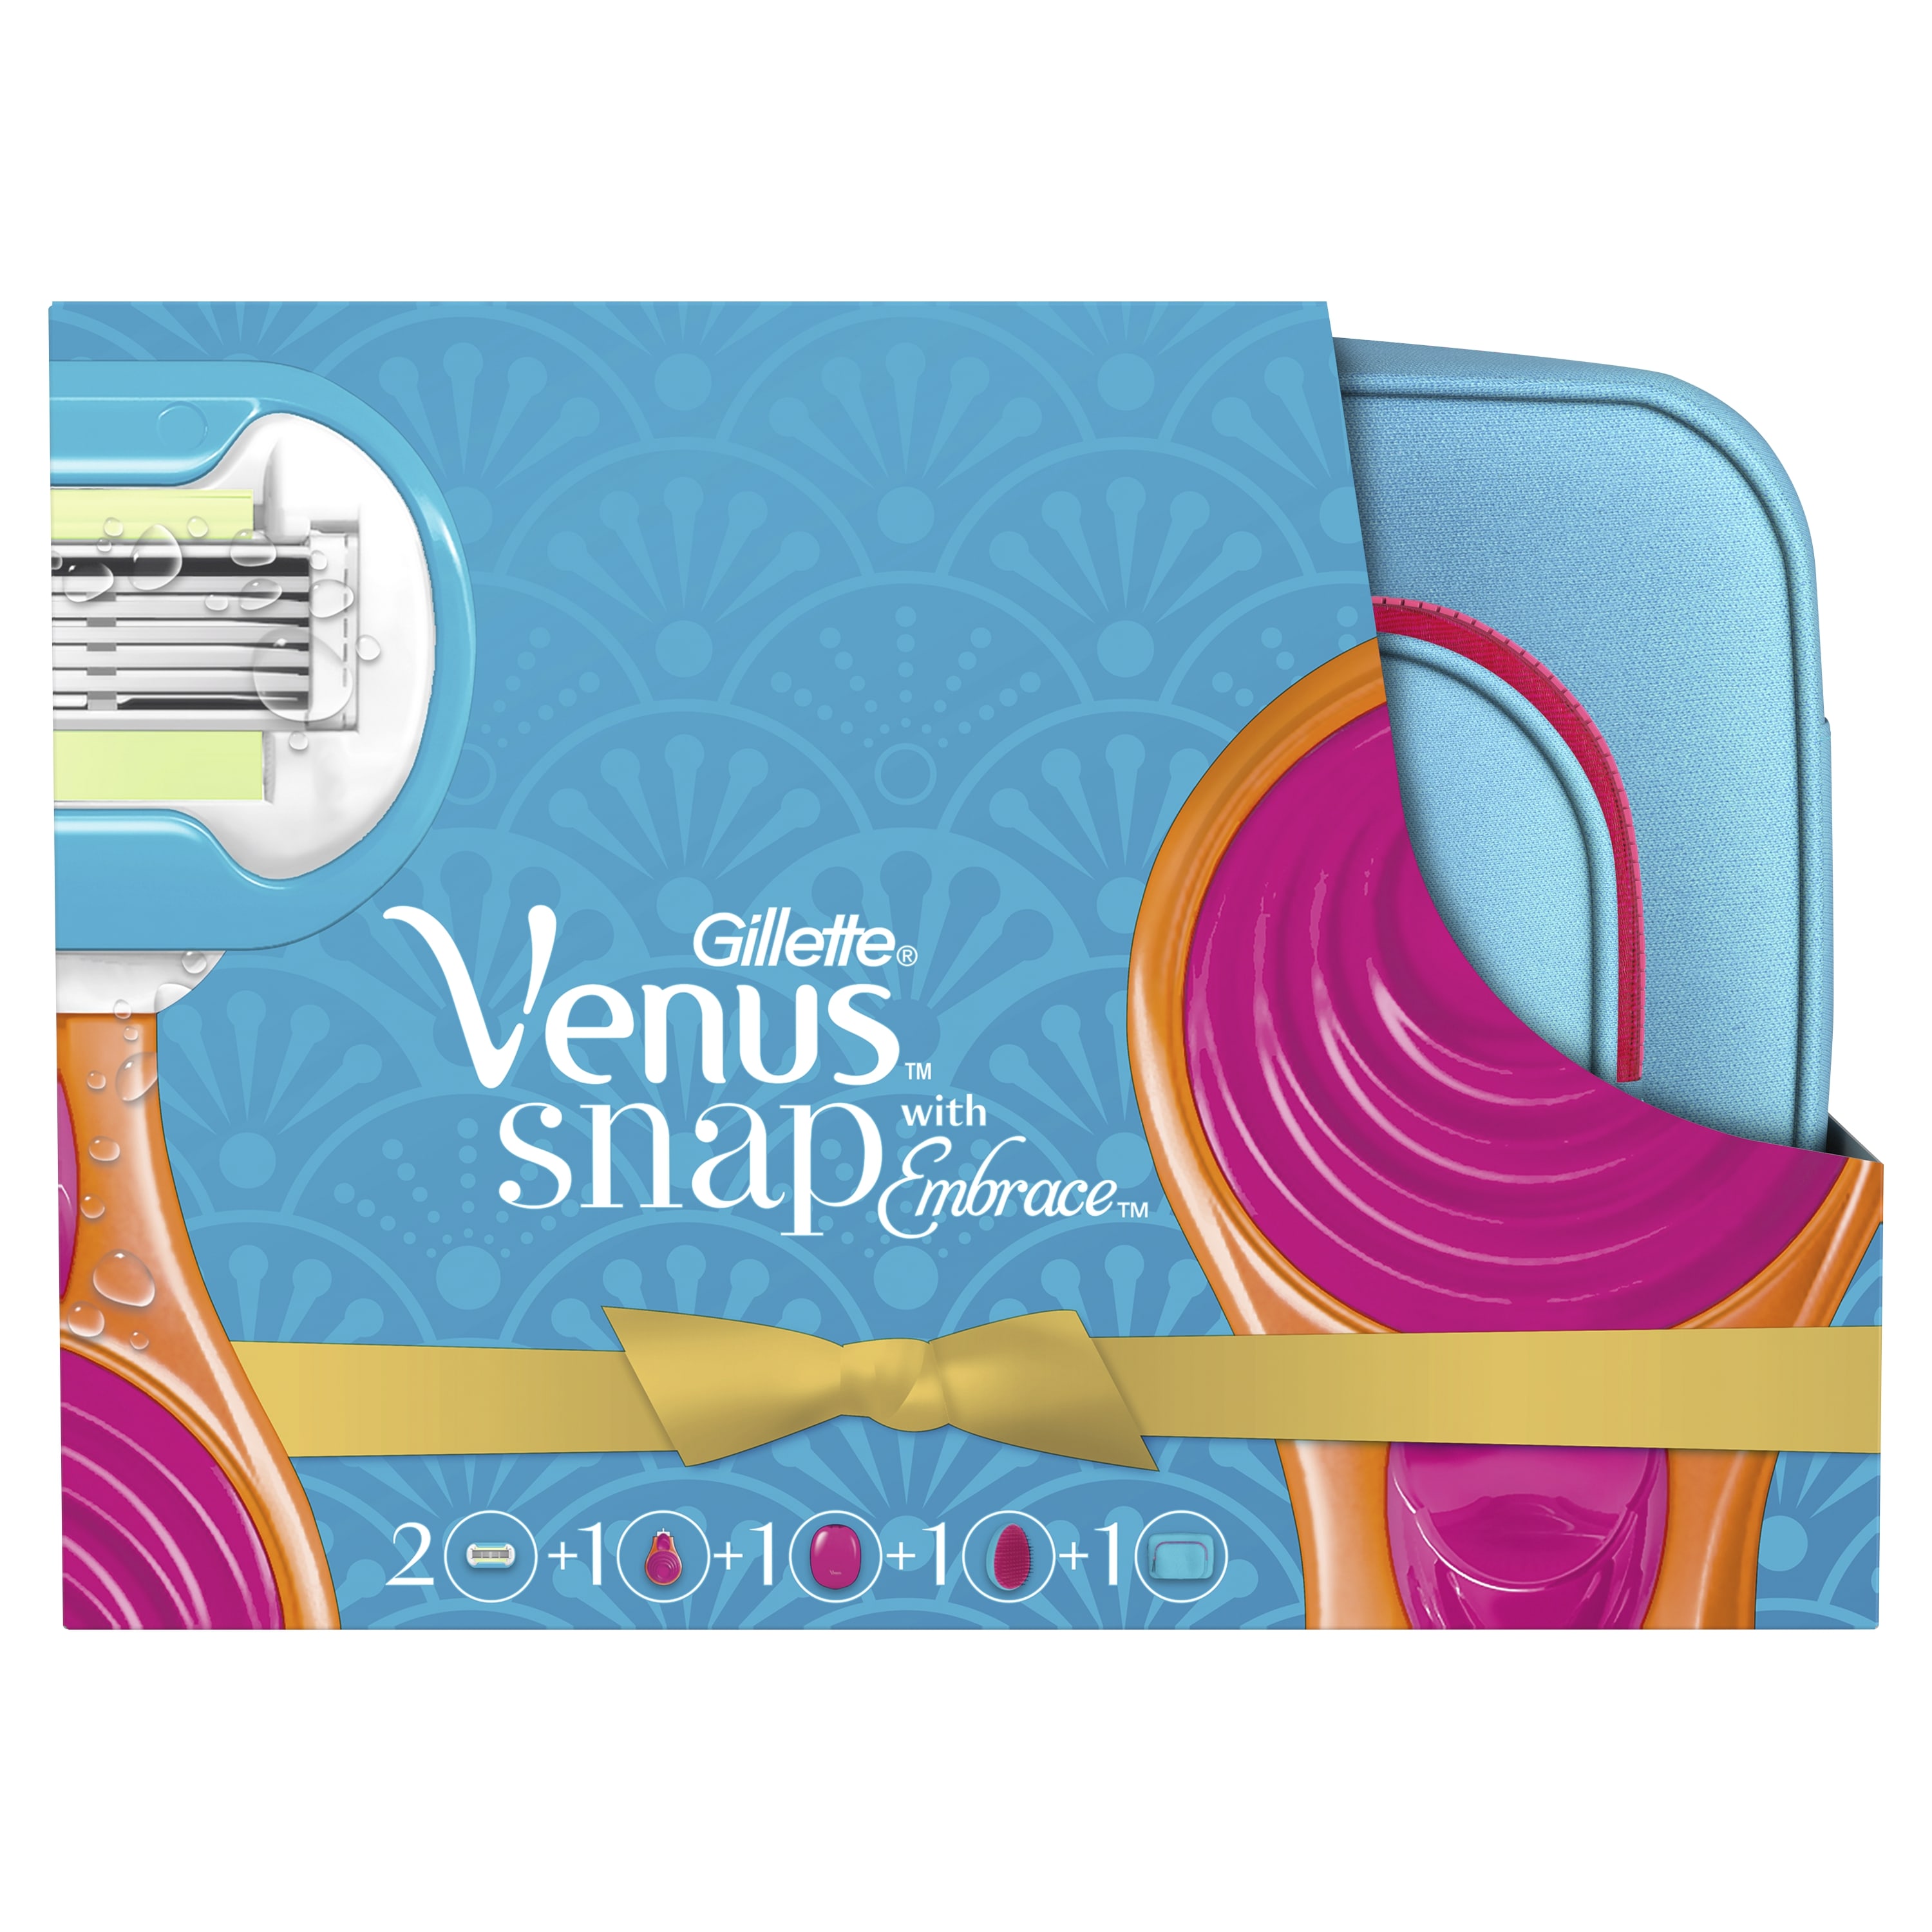 Подарочный набор VENUS Snap Embrace бритва с 1 сменной кассетой+косметичка+расческа shinewell косметичка компактная